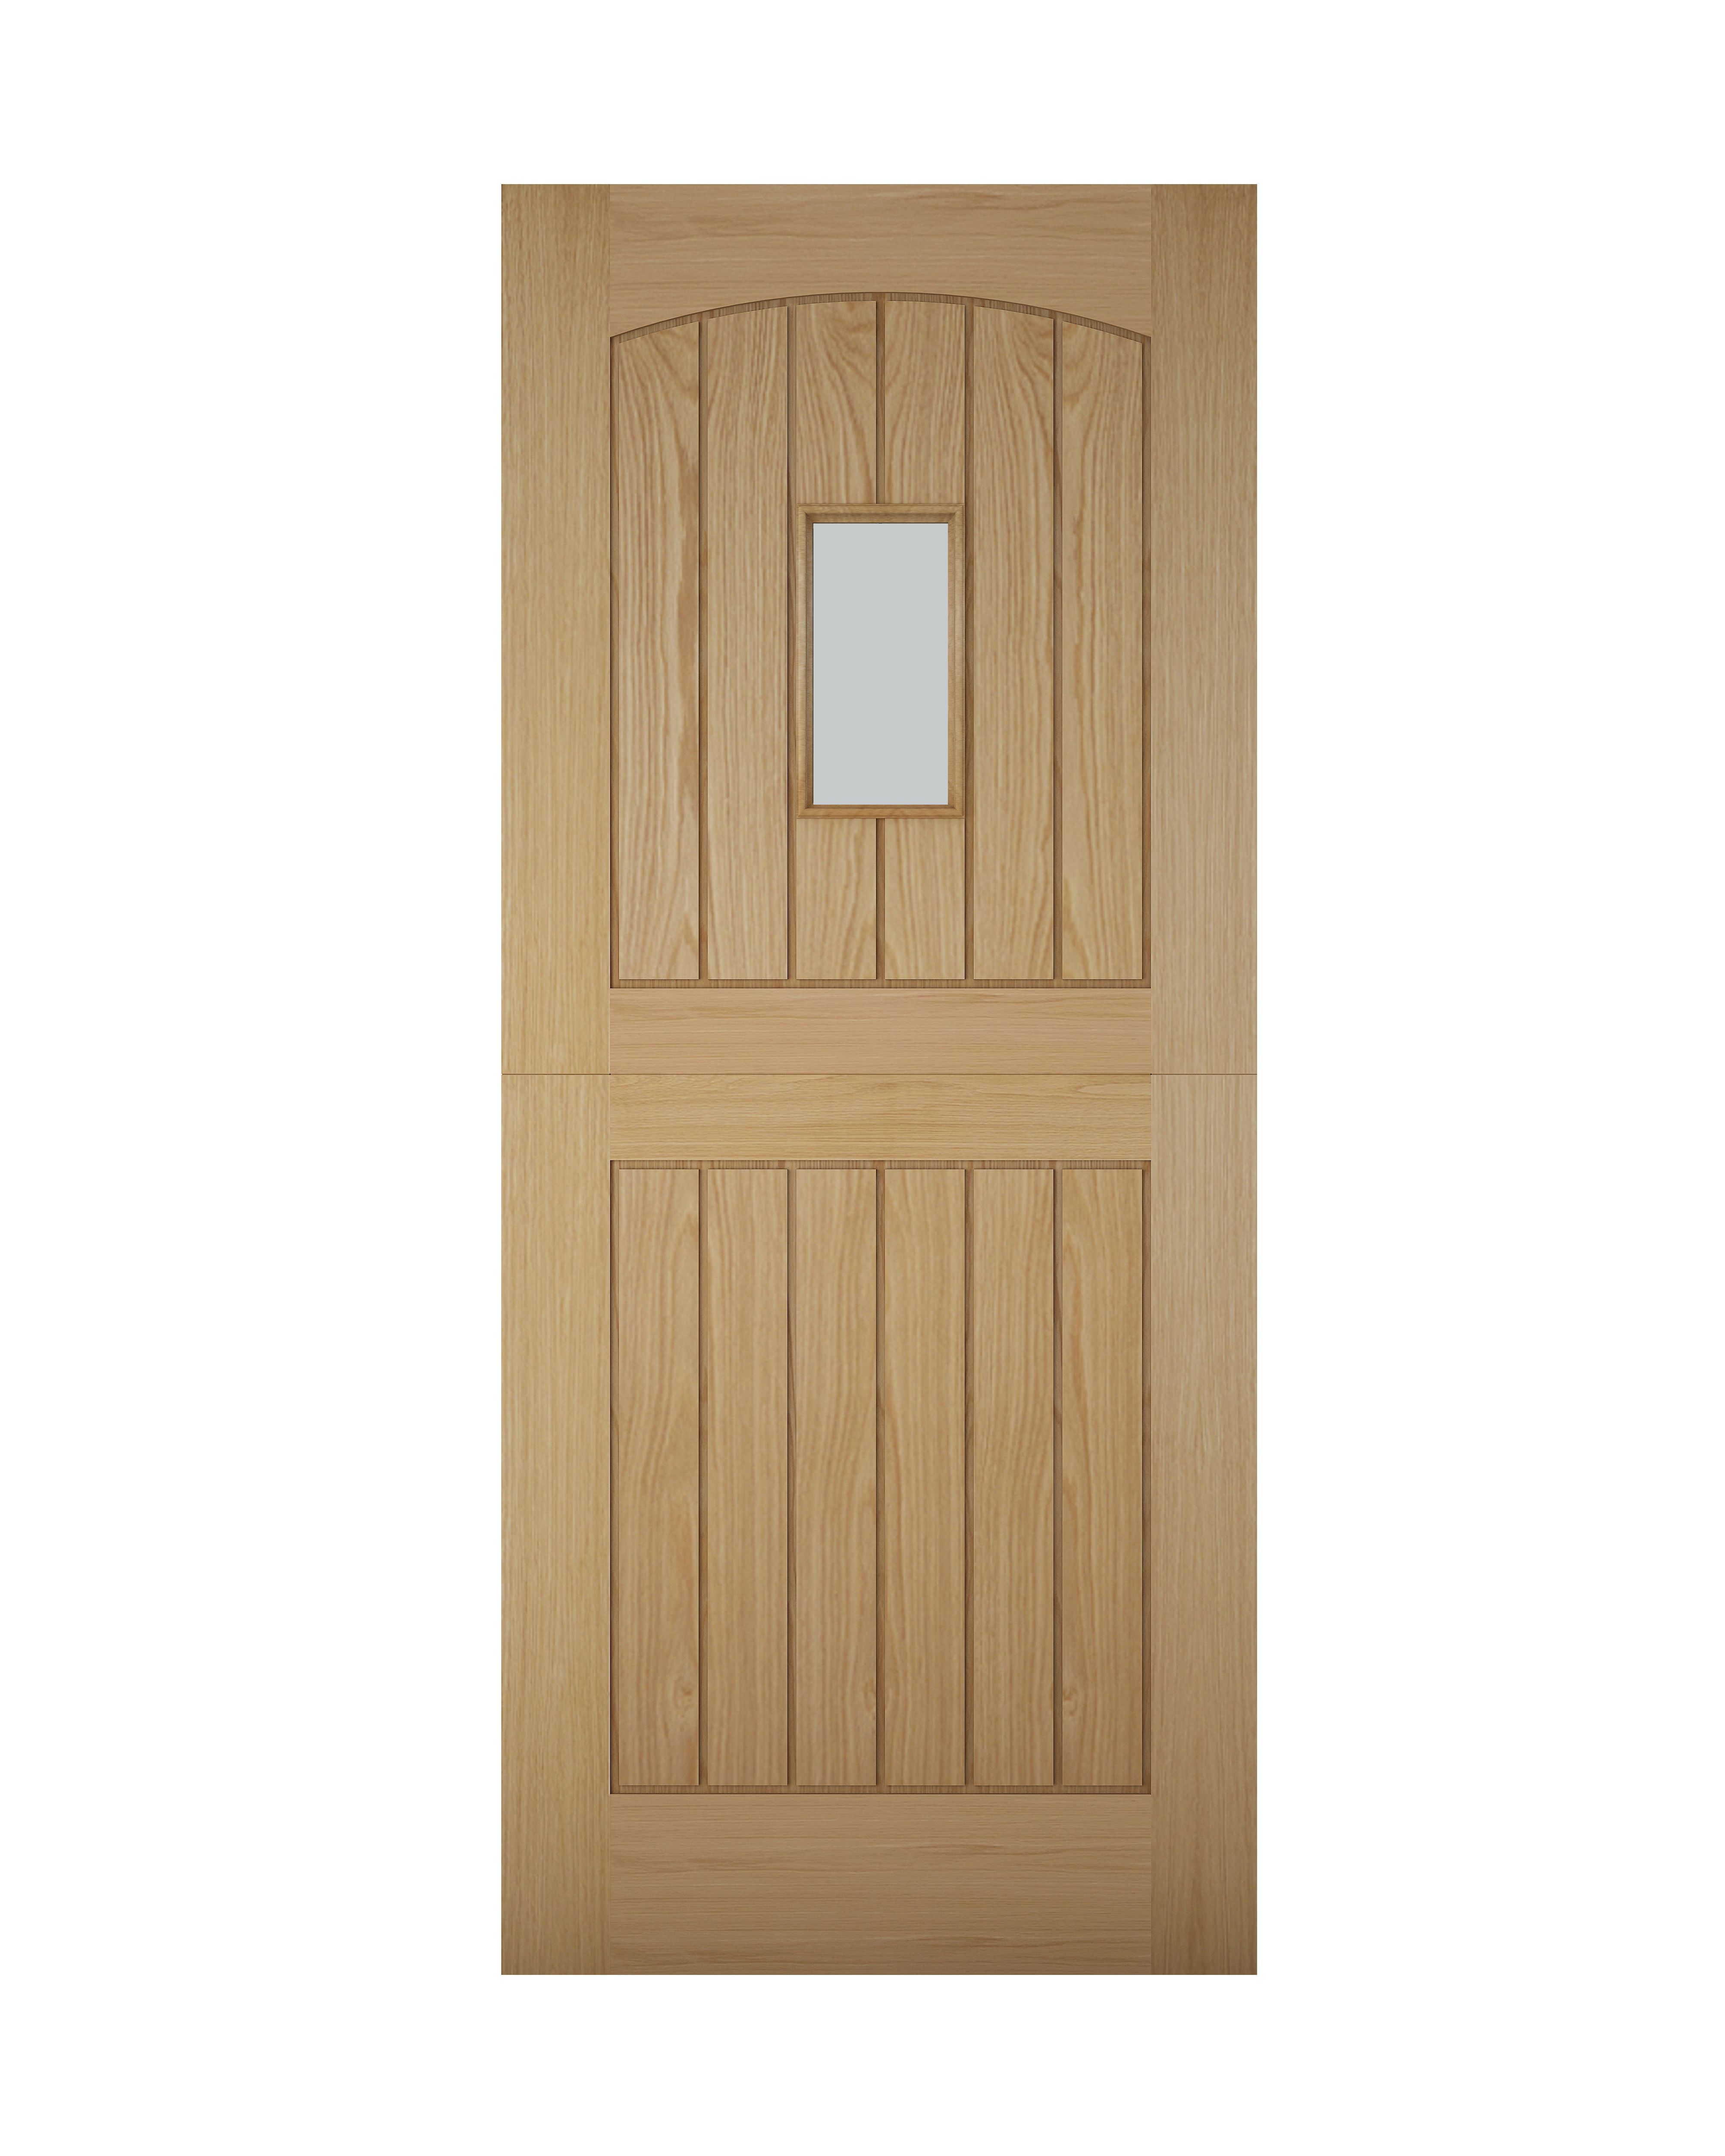 Stable 3 panel Glazed Cottage White oak veneer Left & RHed Front door, (H)2032mm (W)813mm